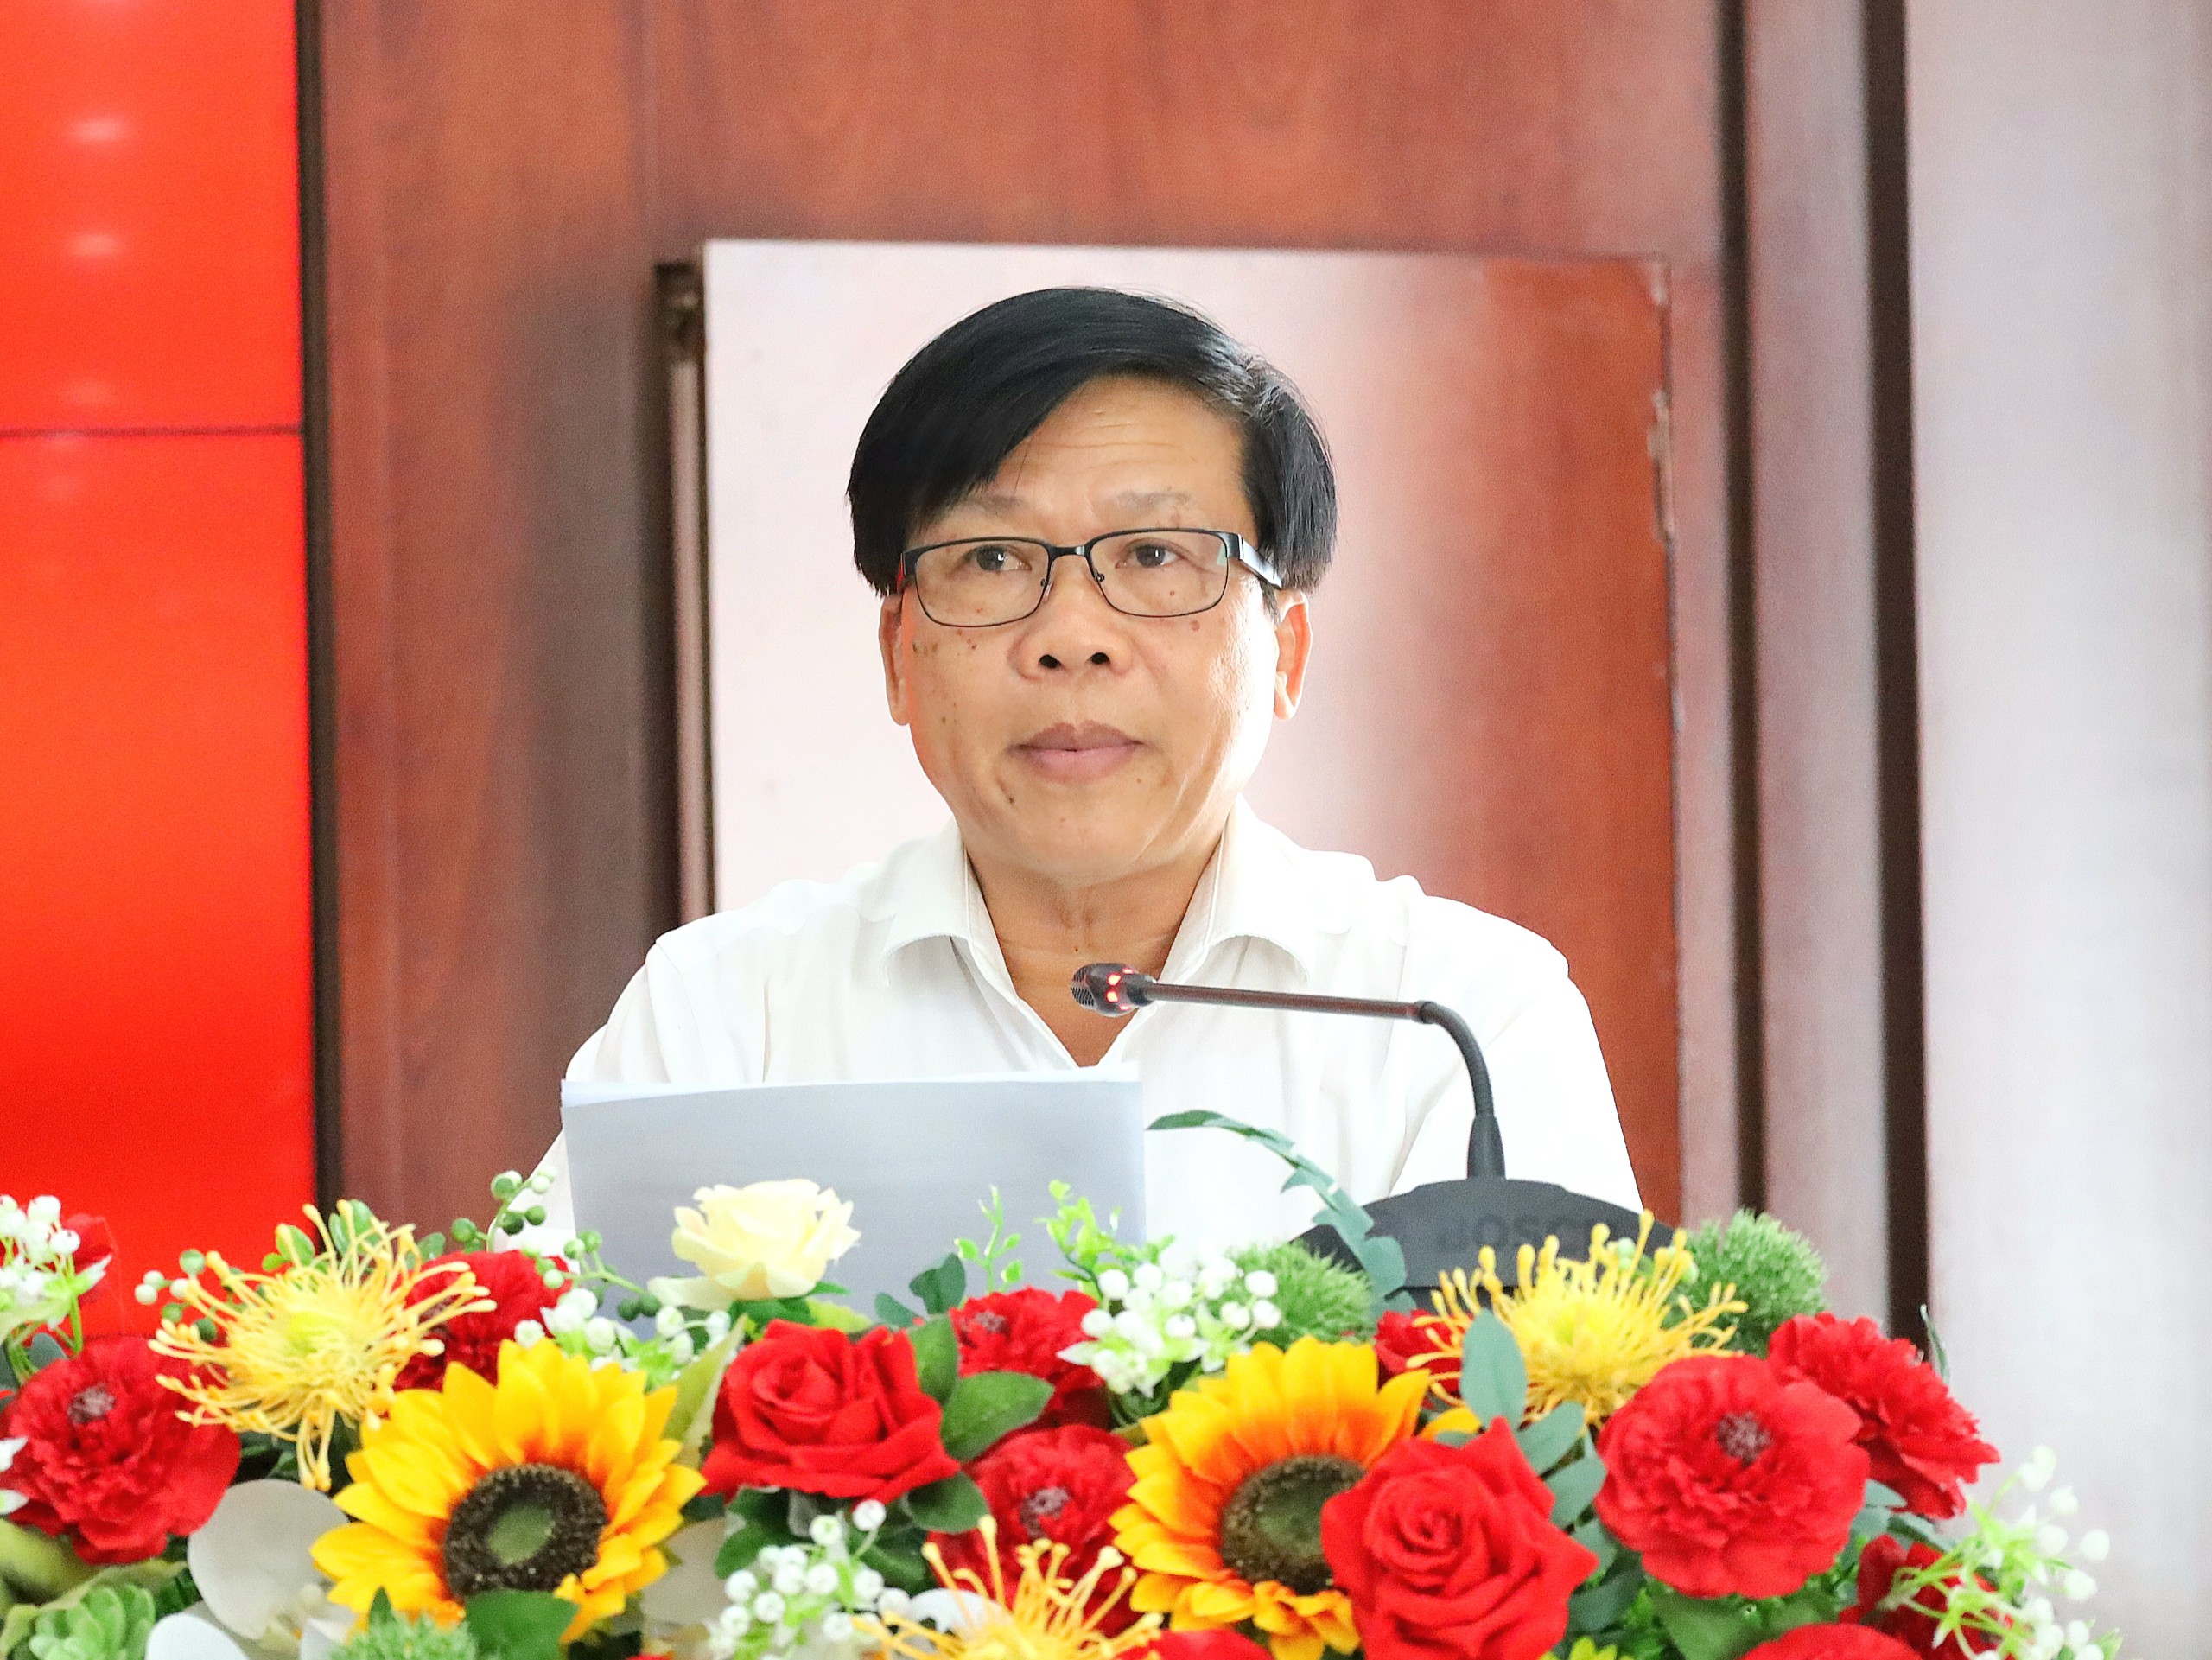 Ông Trần Minh Lý - Giám đốc Sở VHTT&DL tỉnh Sóc Trăng phát biểu tại buổi họp báo.